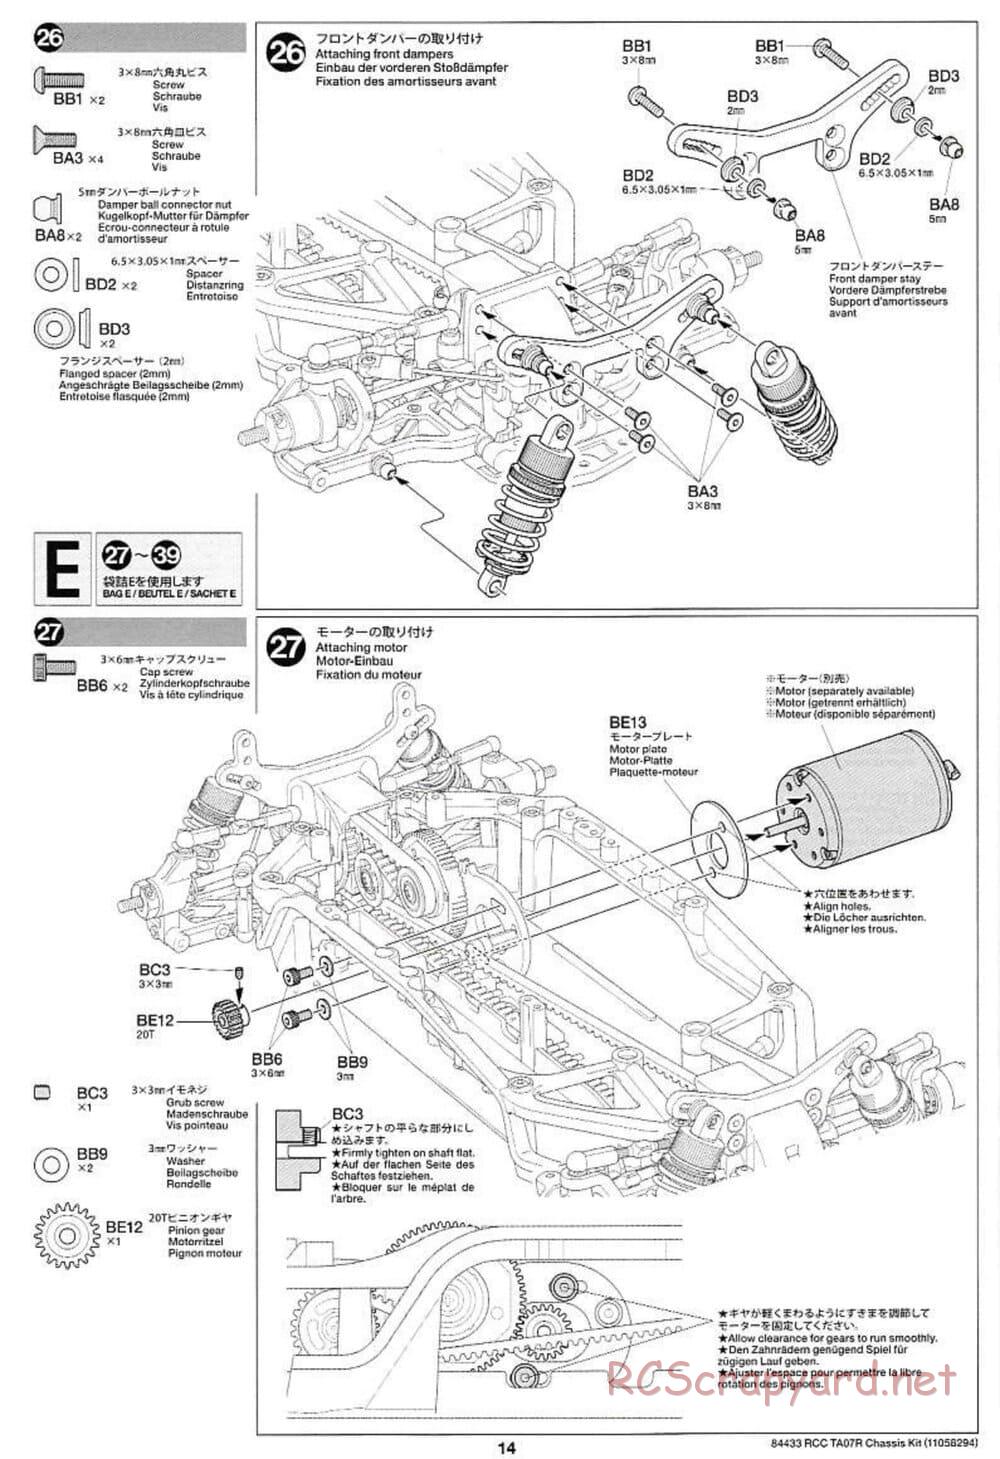 Tamiya - TA07 R Chassis - Manual - Page 14